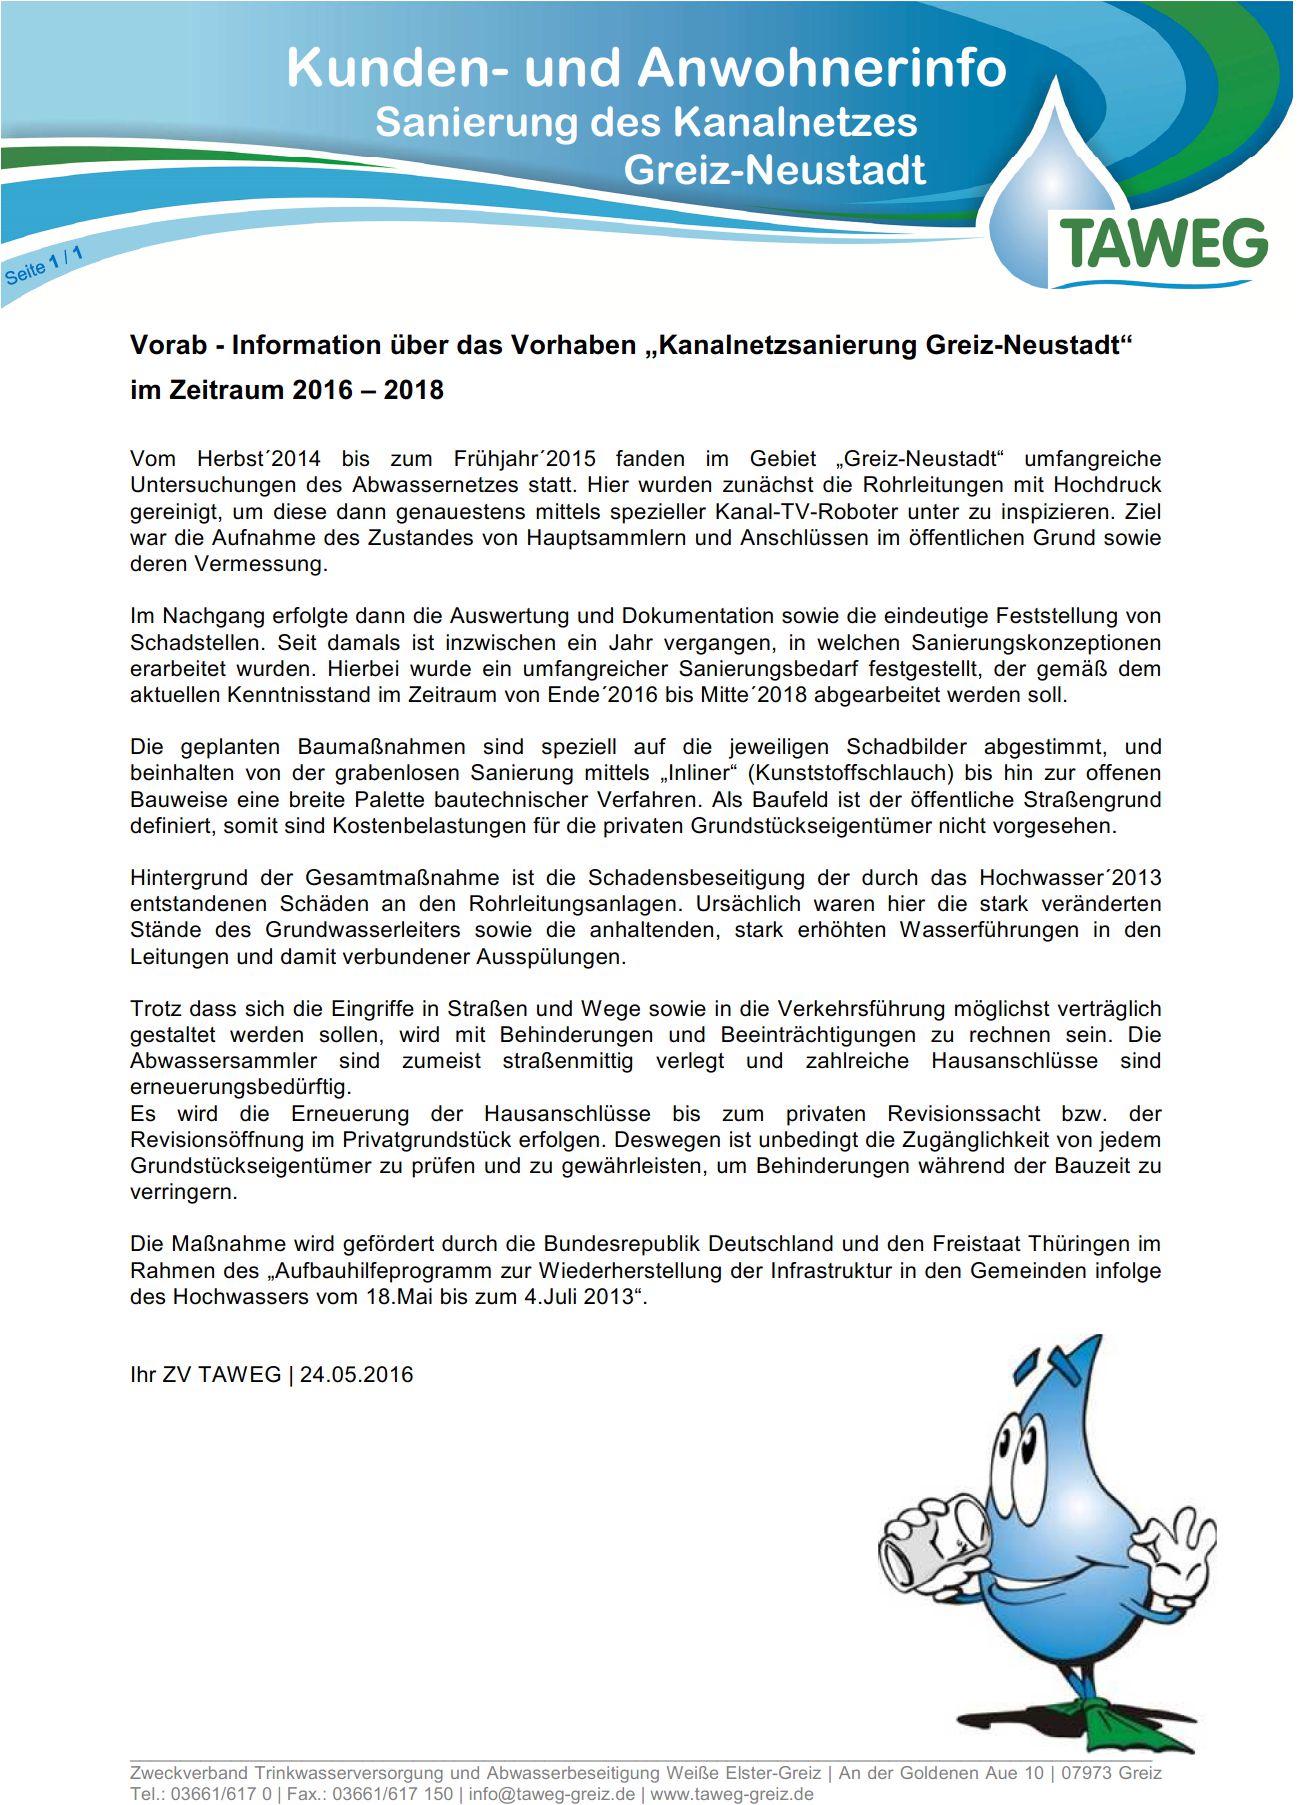 Read more about the article Kundeninfo der TAWEG zur „Kanalnetzsanierung Greiz-Neustadt“